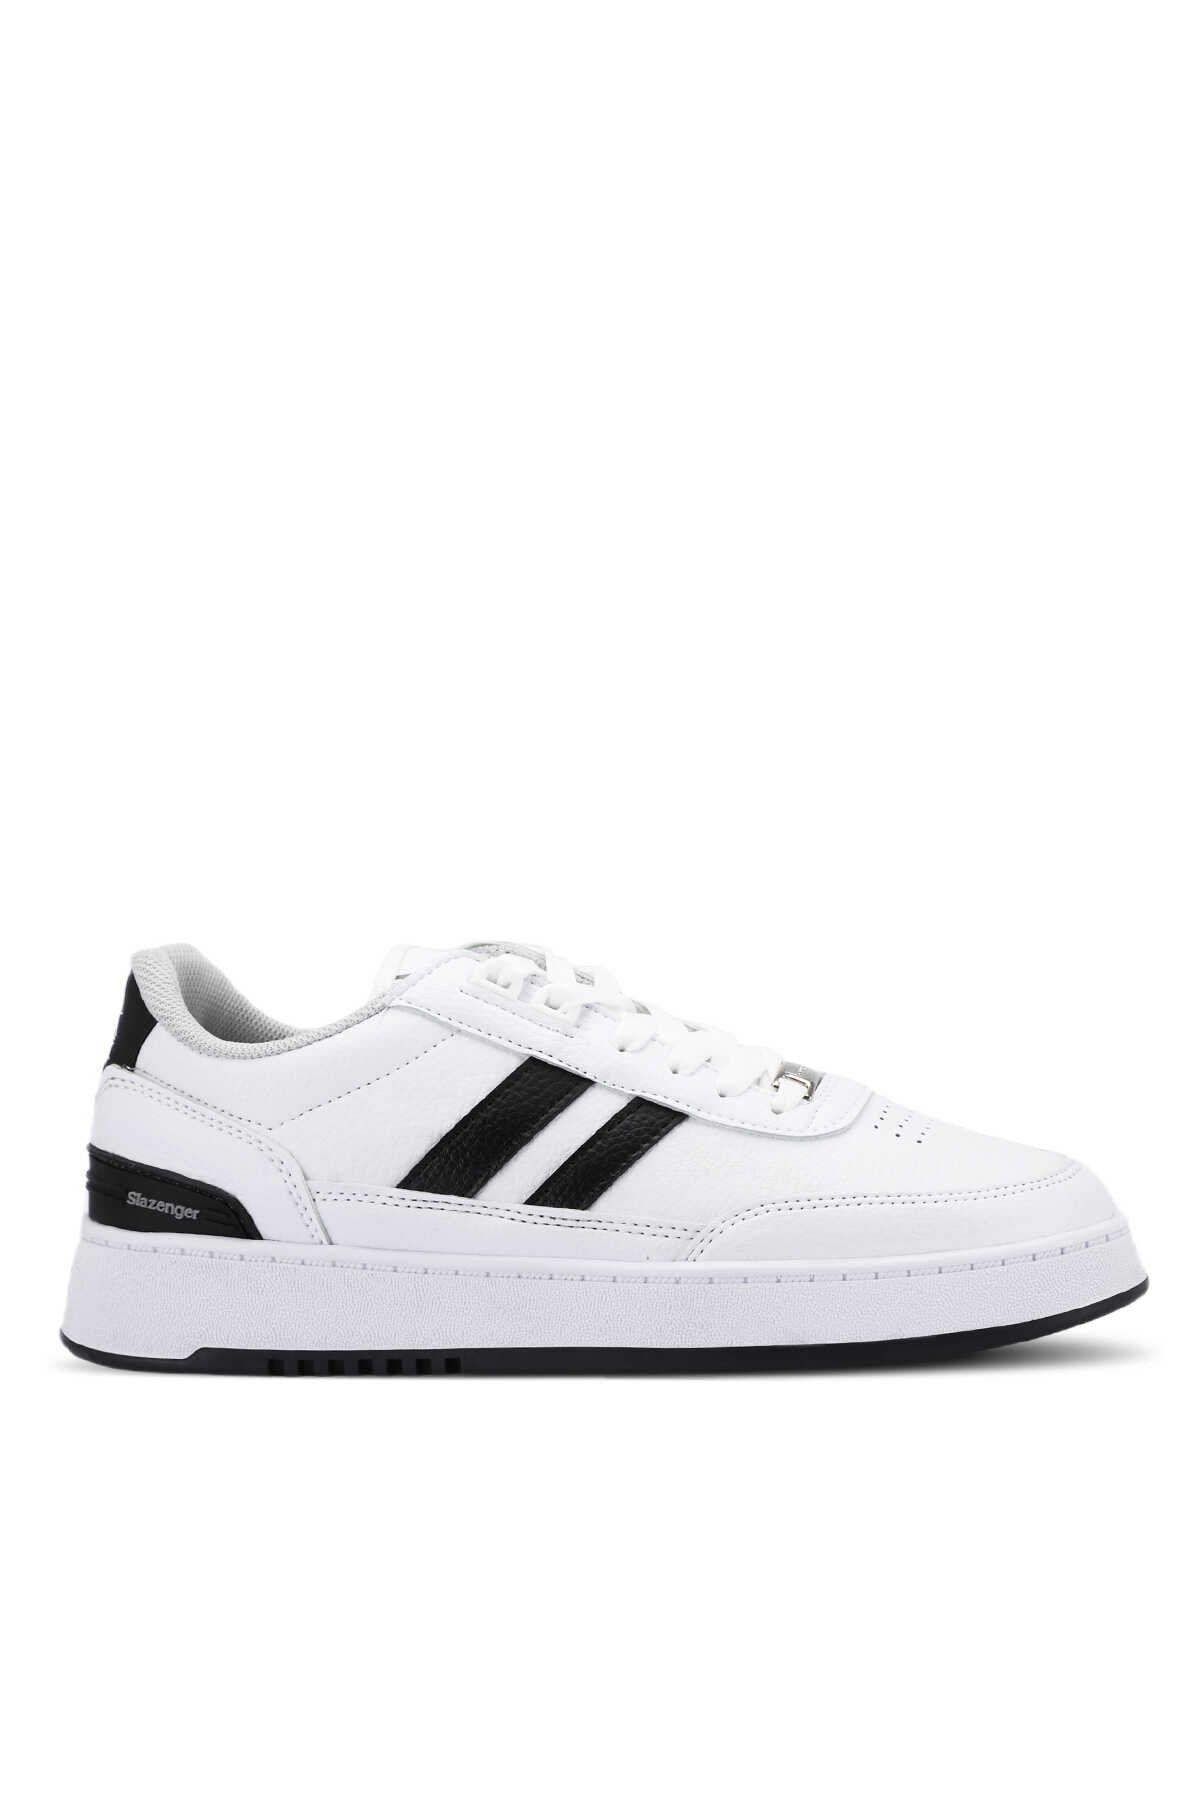 Slazenger - DAPHNE Sneaker Erkek Ayakkabı Beyaz / Siyah